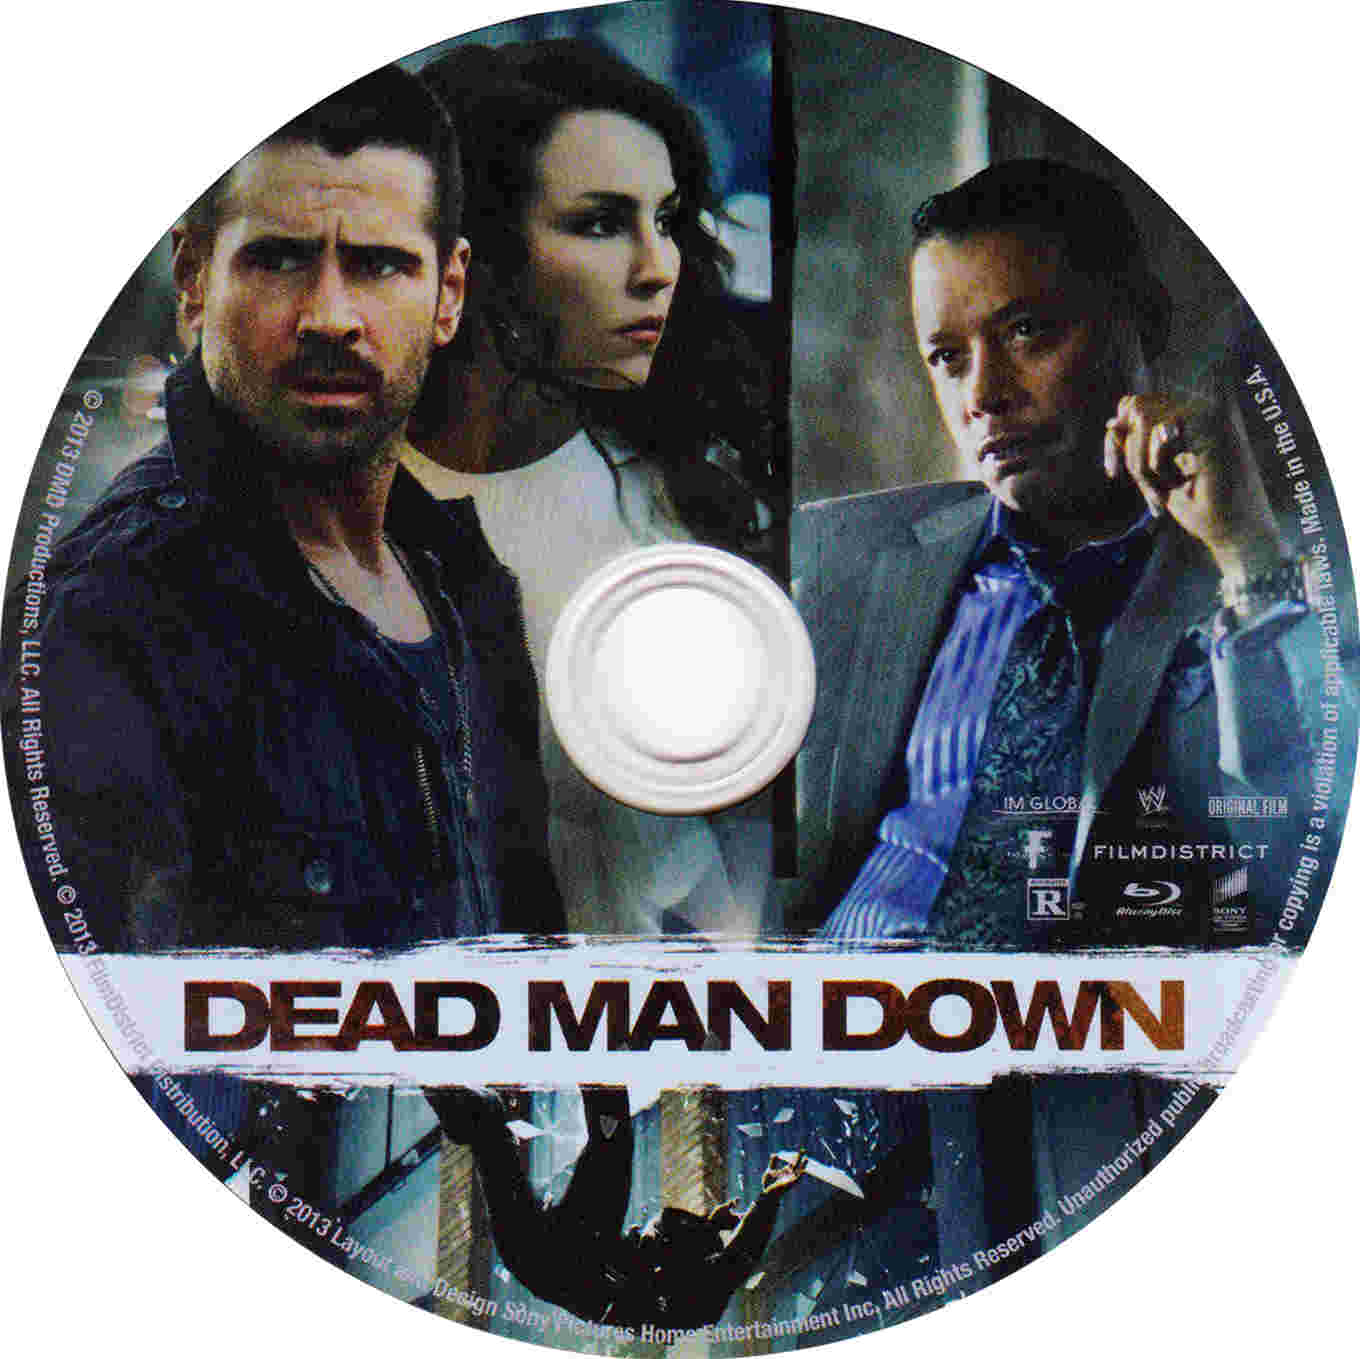 Dead Man Down DVD Cover